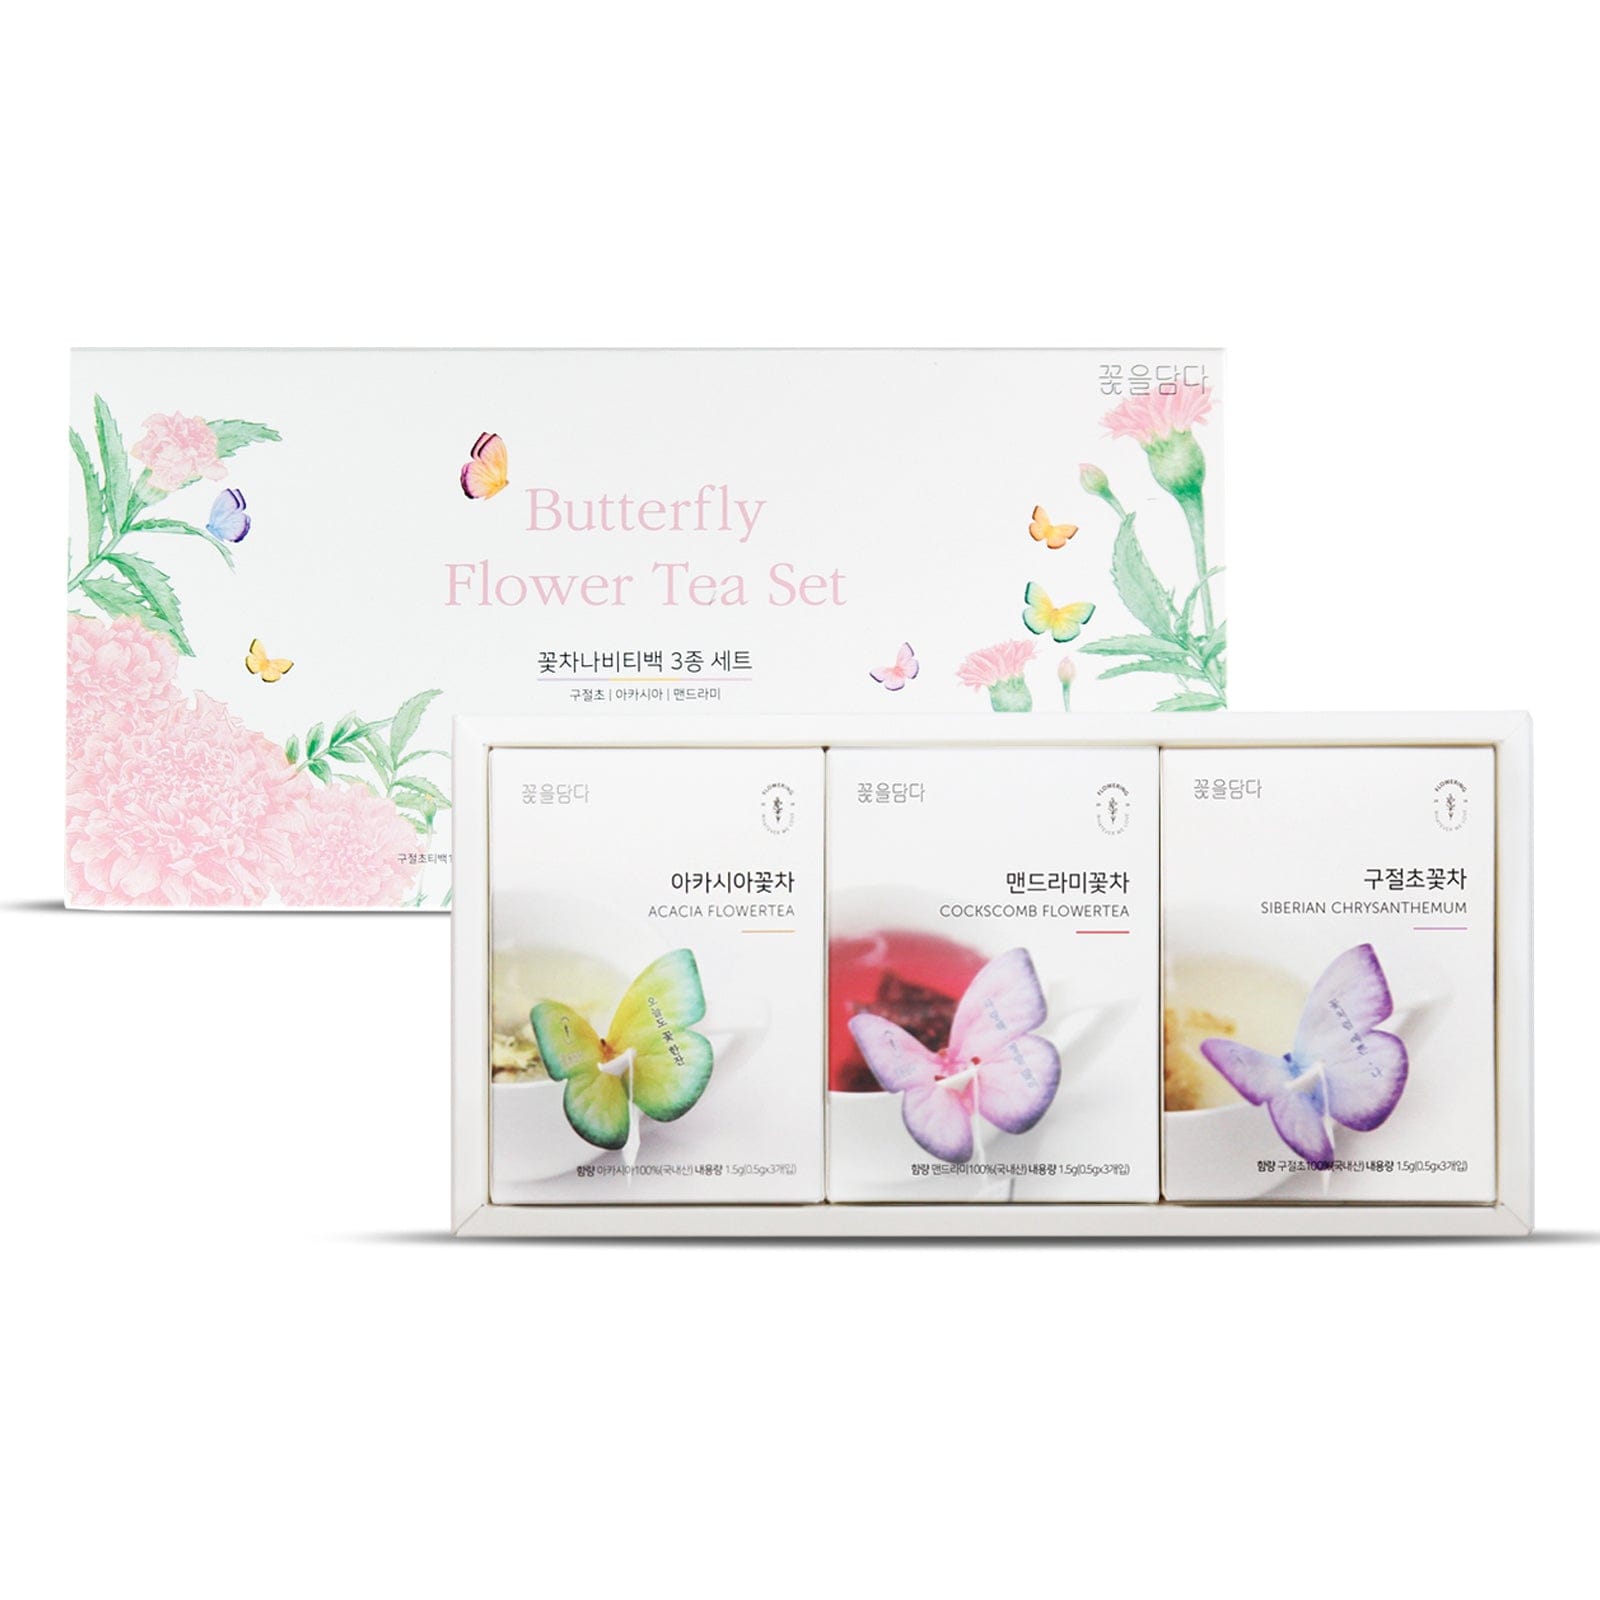 KKOKDAM Butterfly Flower Tea Bag 3 Butterfly Tea Bag Pink Gift Box